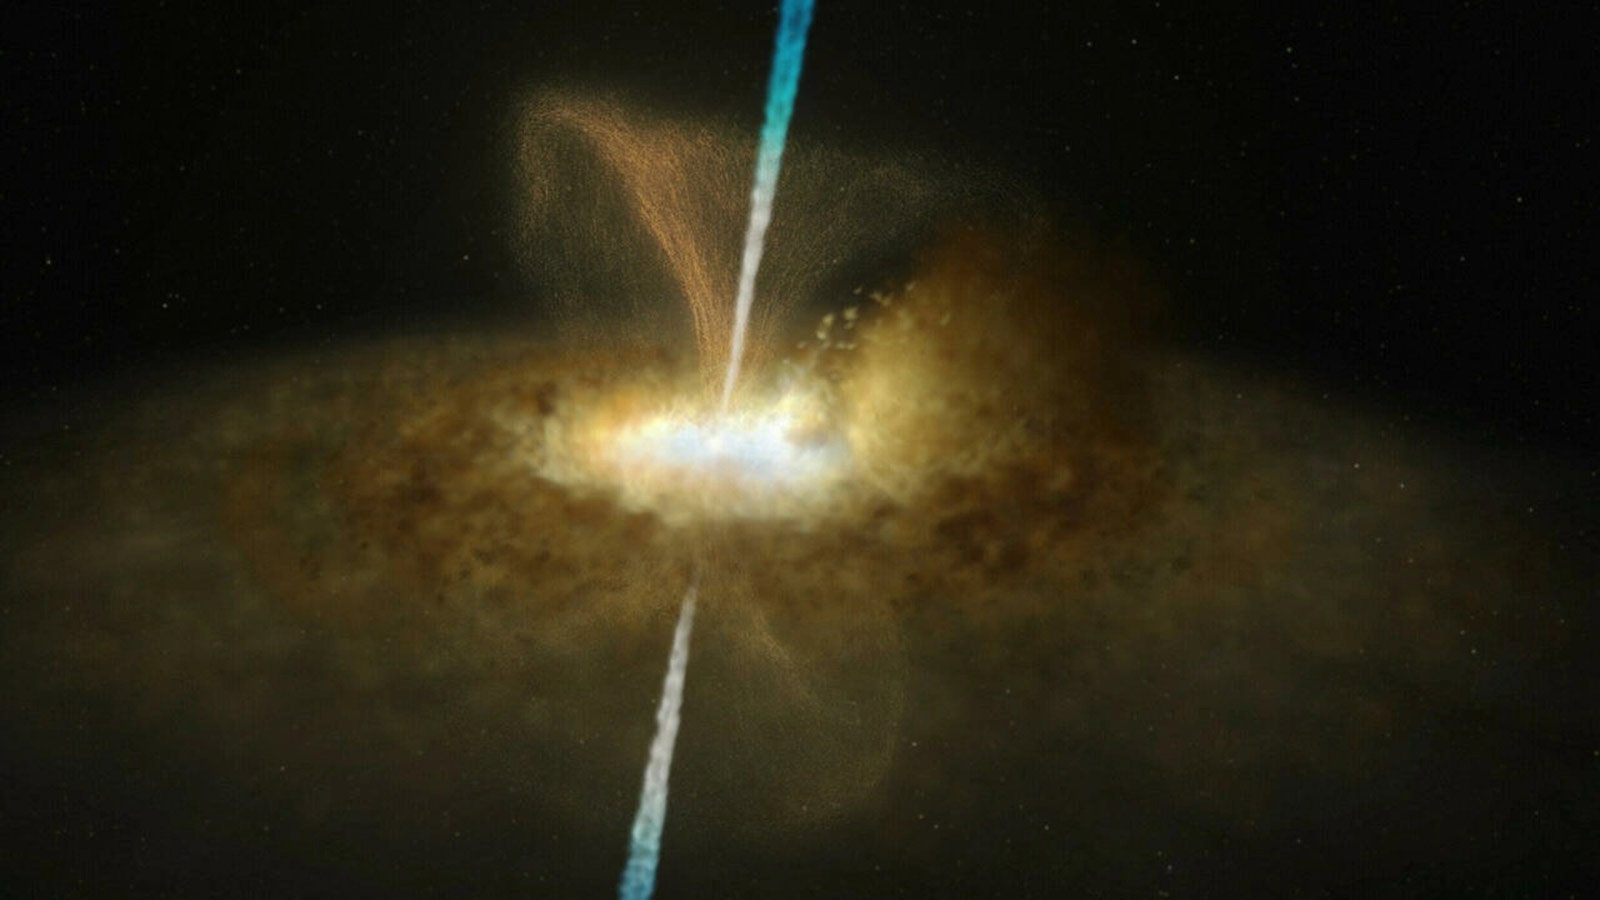  خبير فلكي يكشف حقيقة صورة ثقب أسود يلتهم الأرض